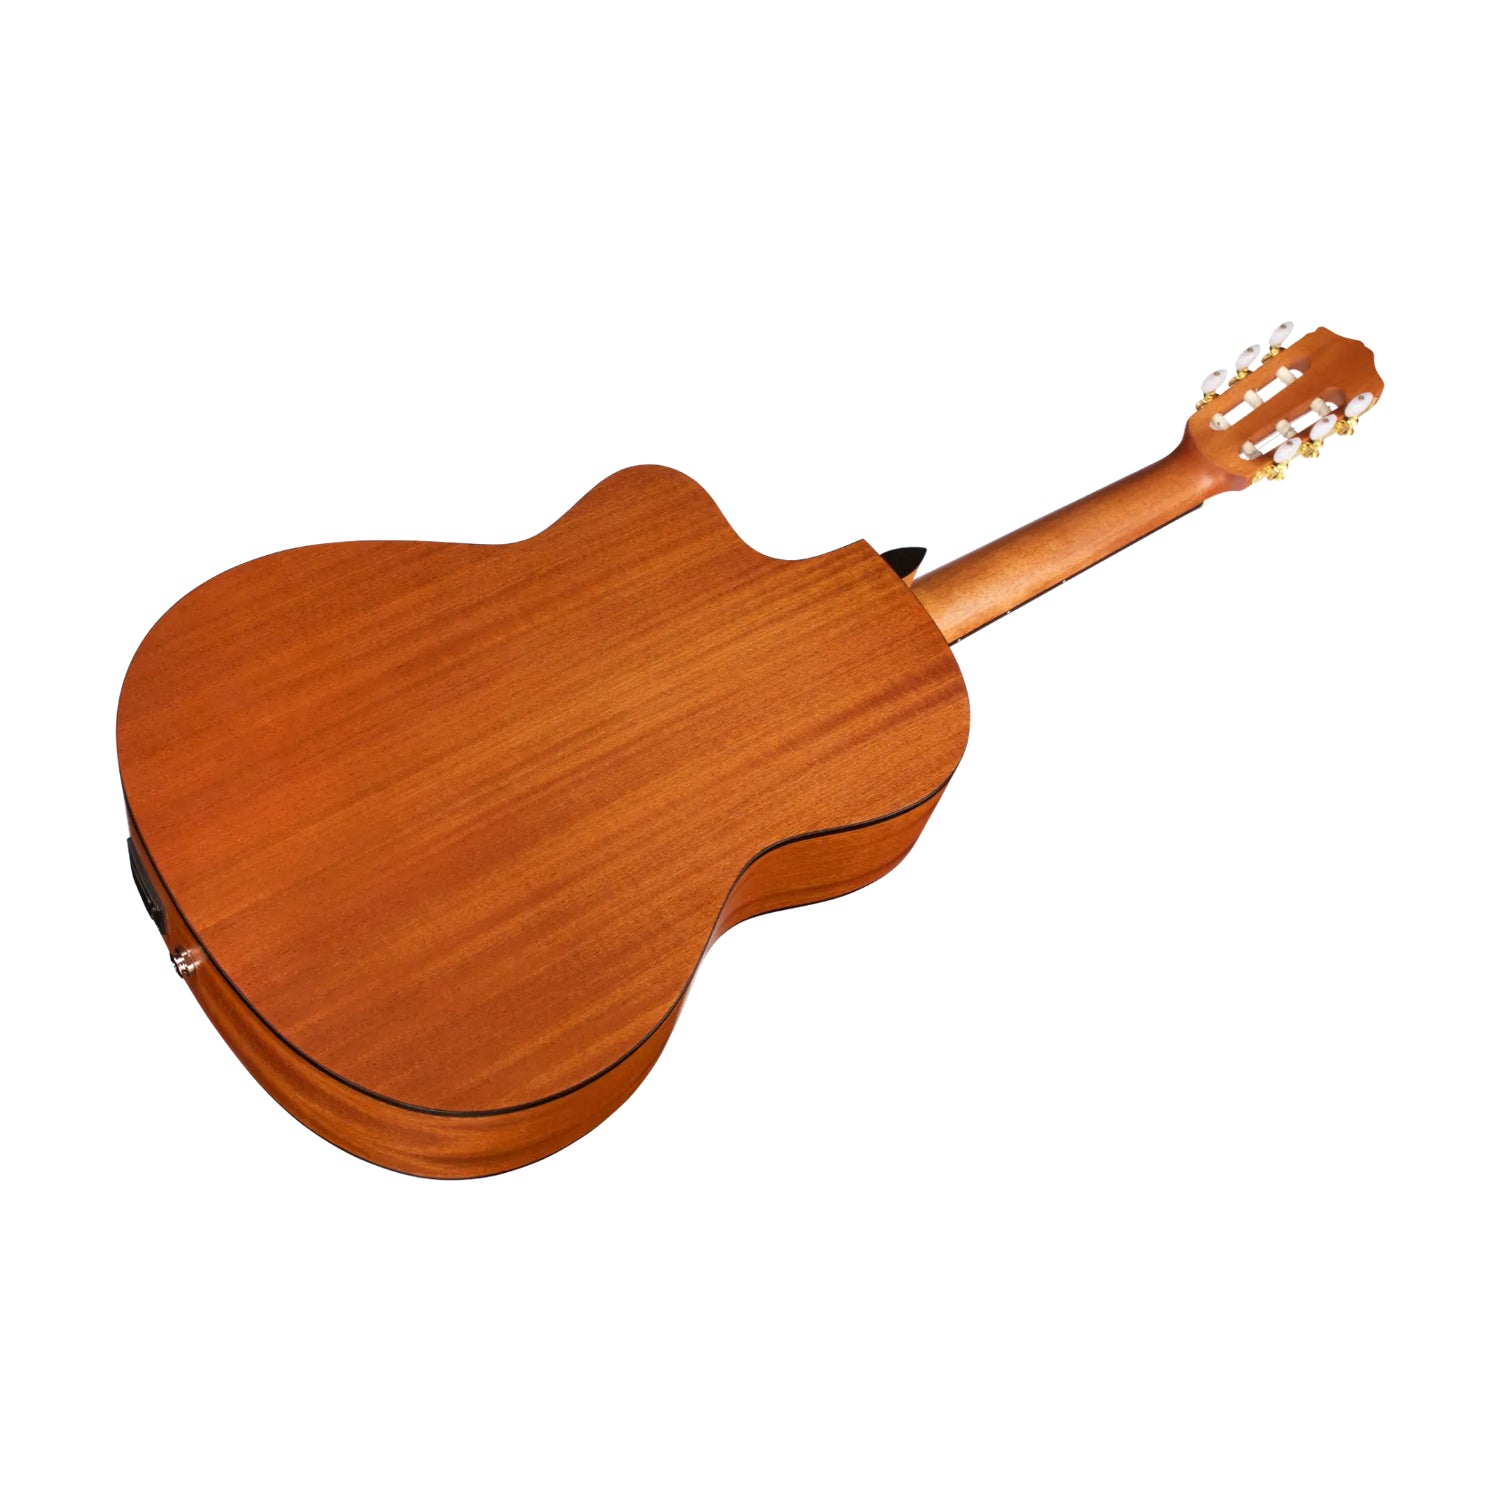 Córdoba Protégé C1M-CE Acoustic Guitar - Natural